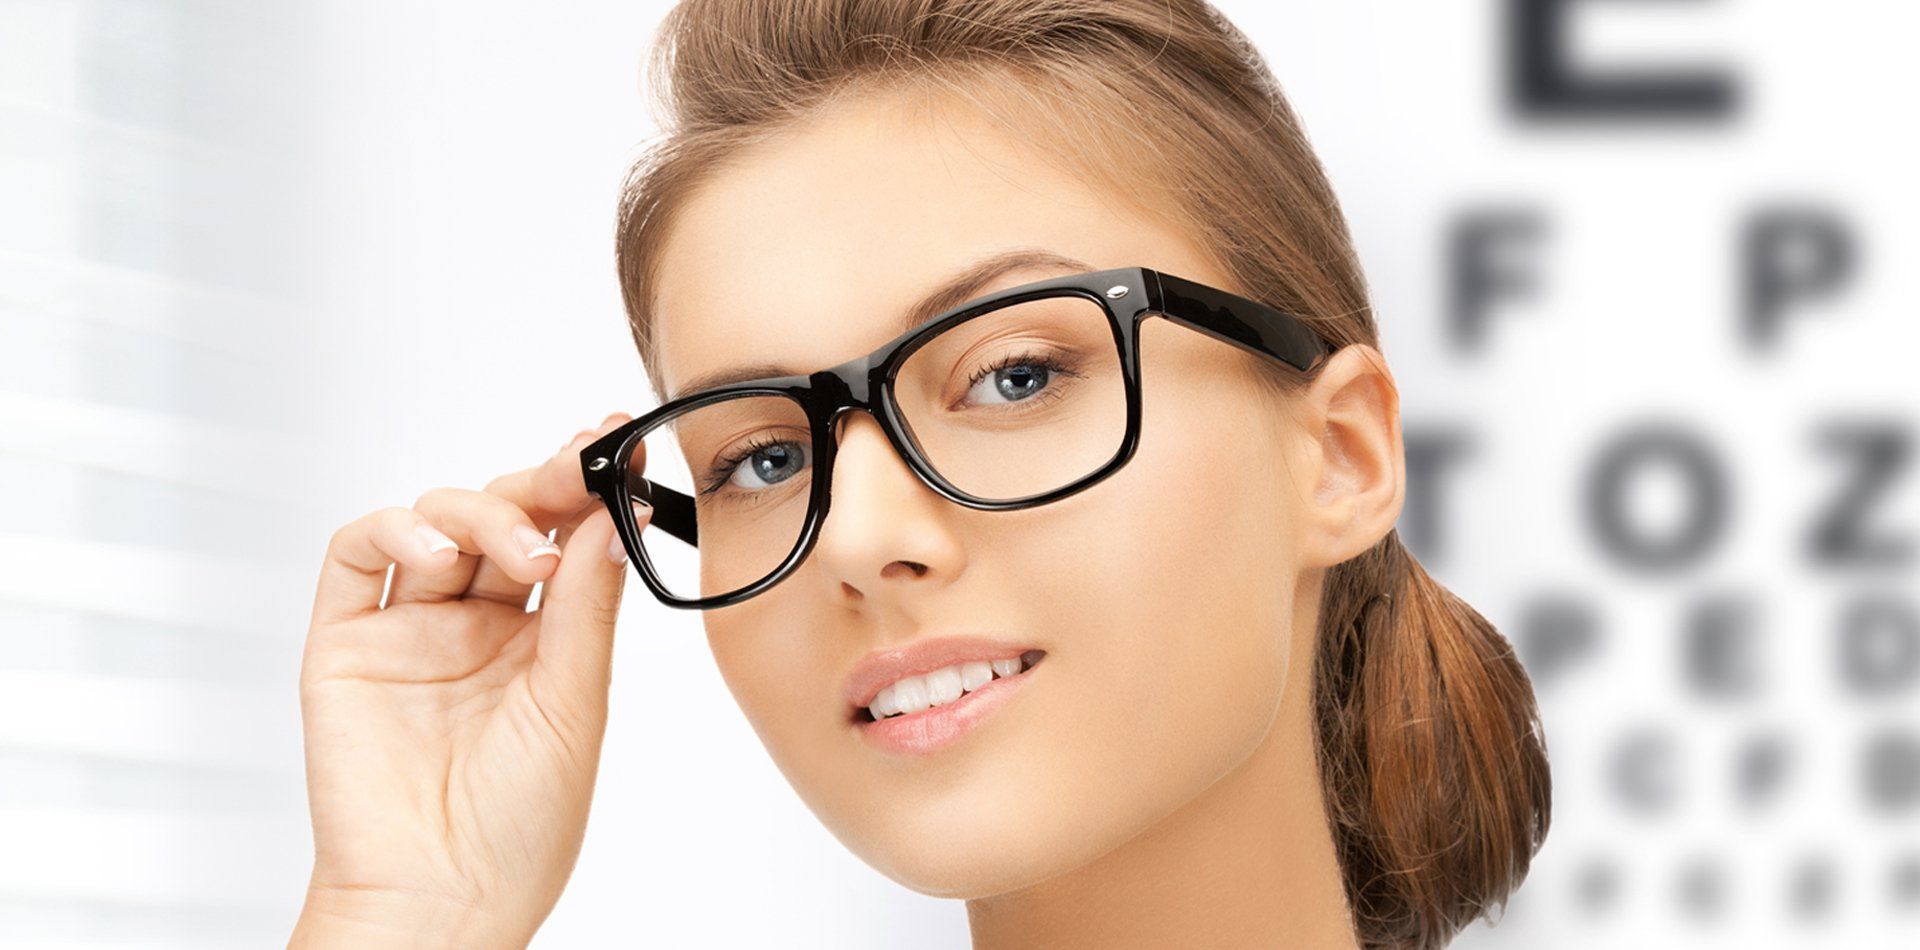 Lady wearing specs